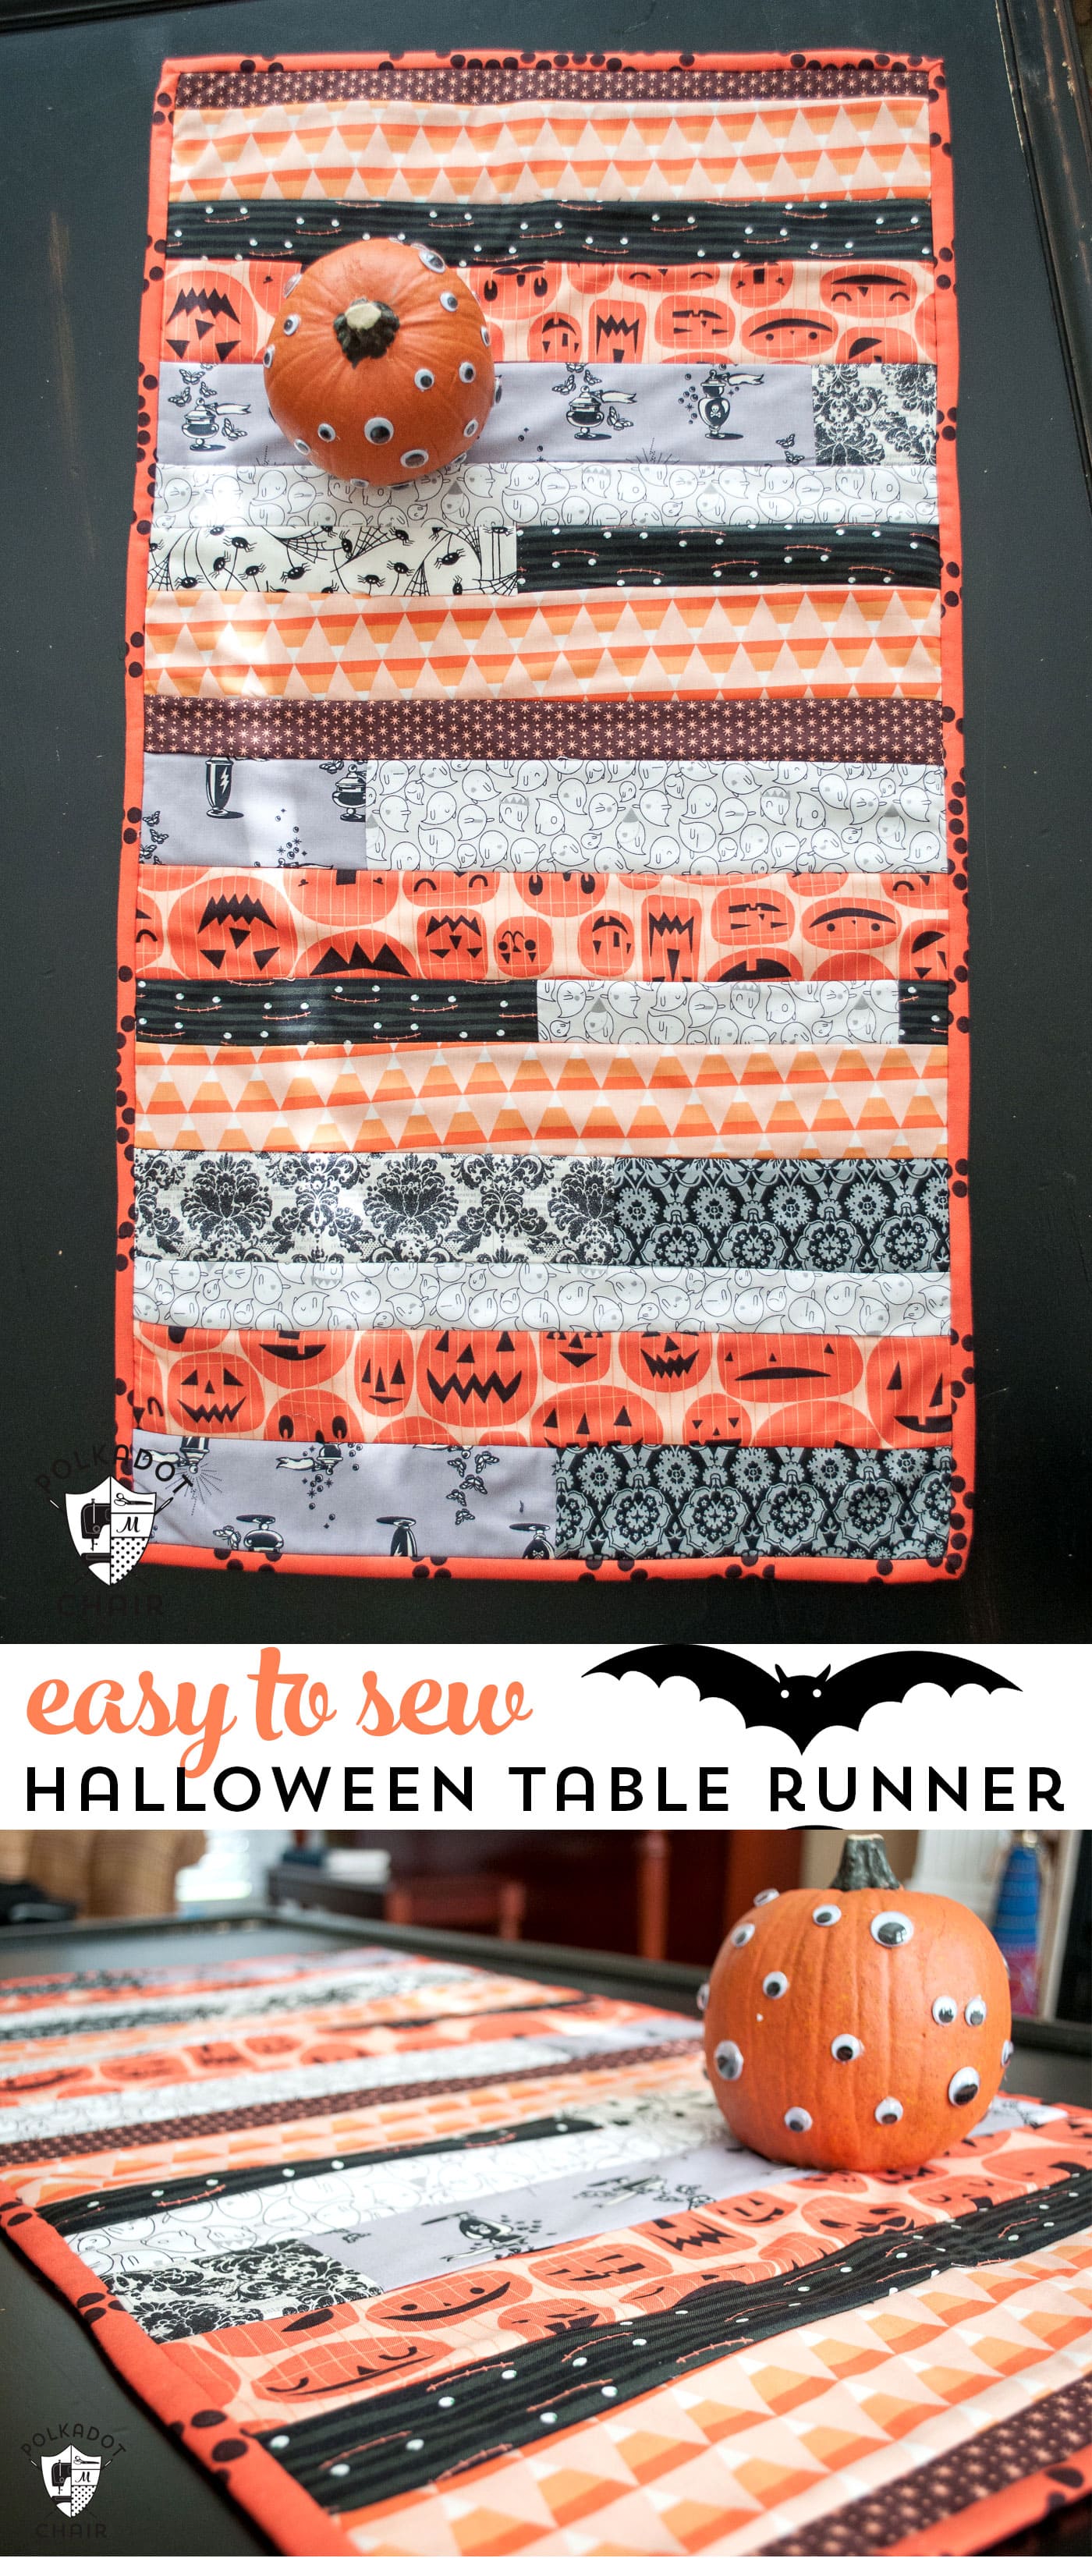 Joli chemin de table d'Halloween « quilt as you go » sur table noire